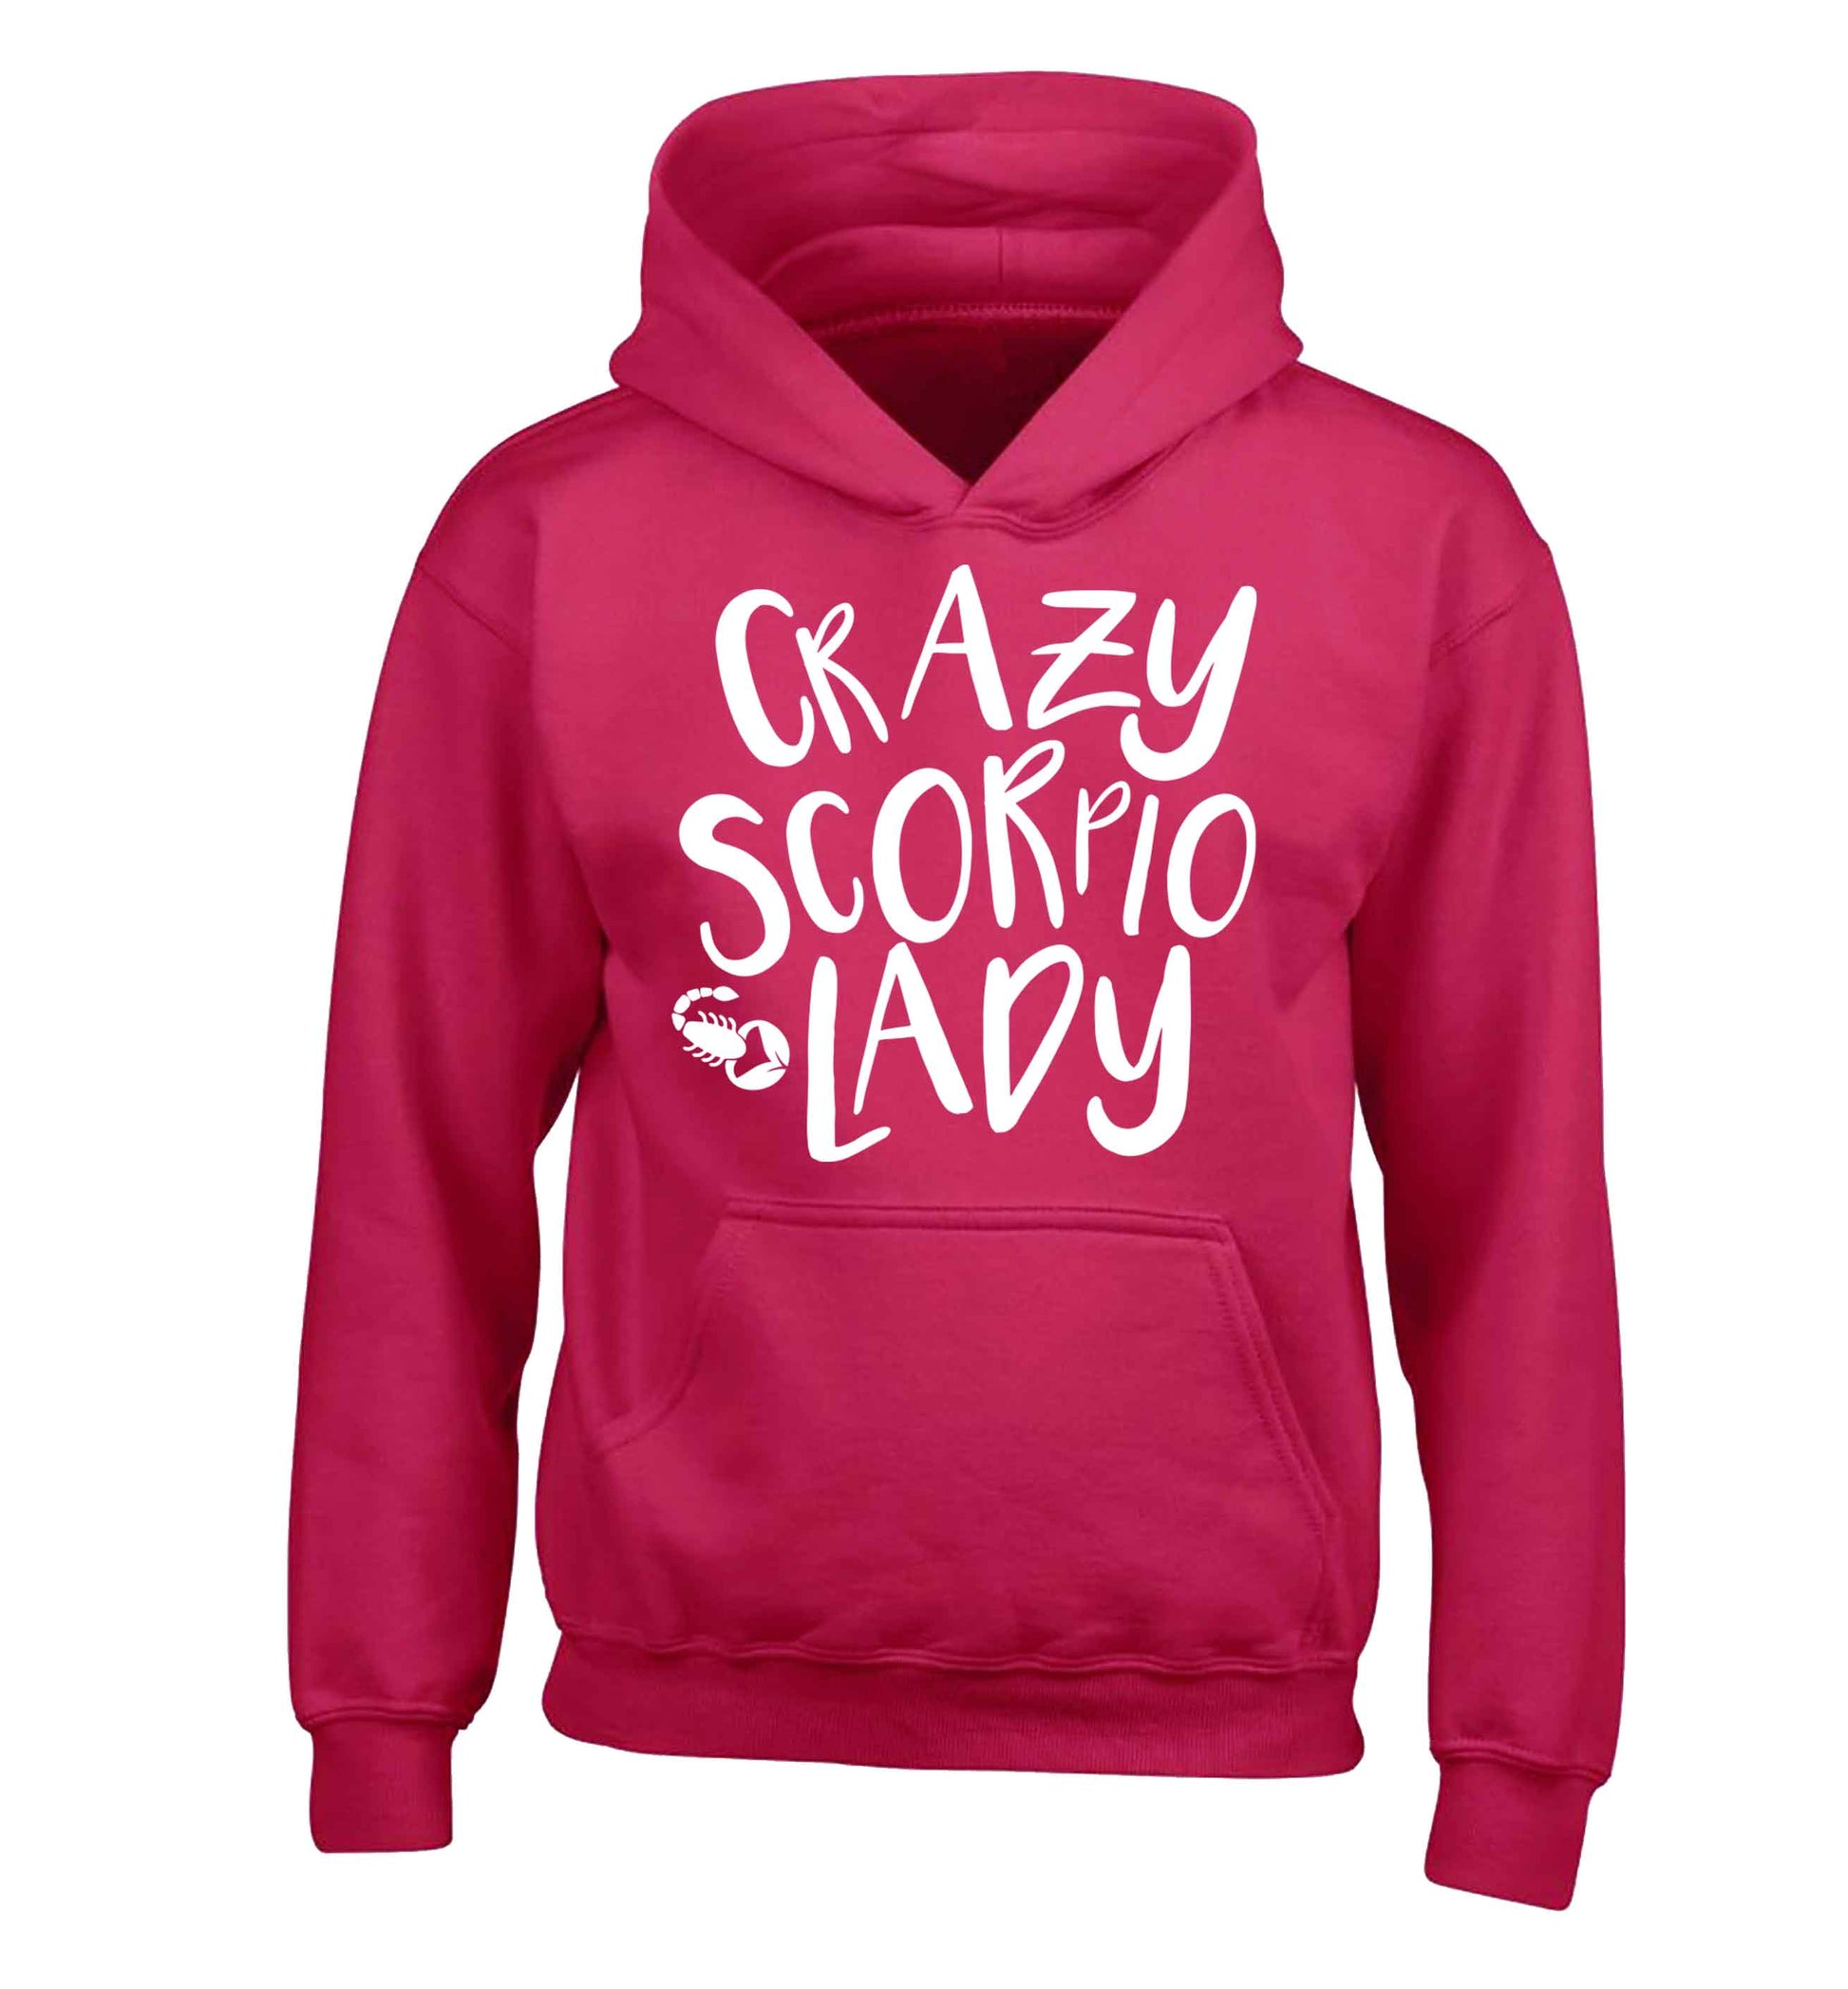 Crazy scorpio lady children's pink hoodie 12-13 Years